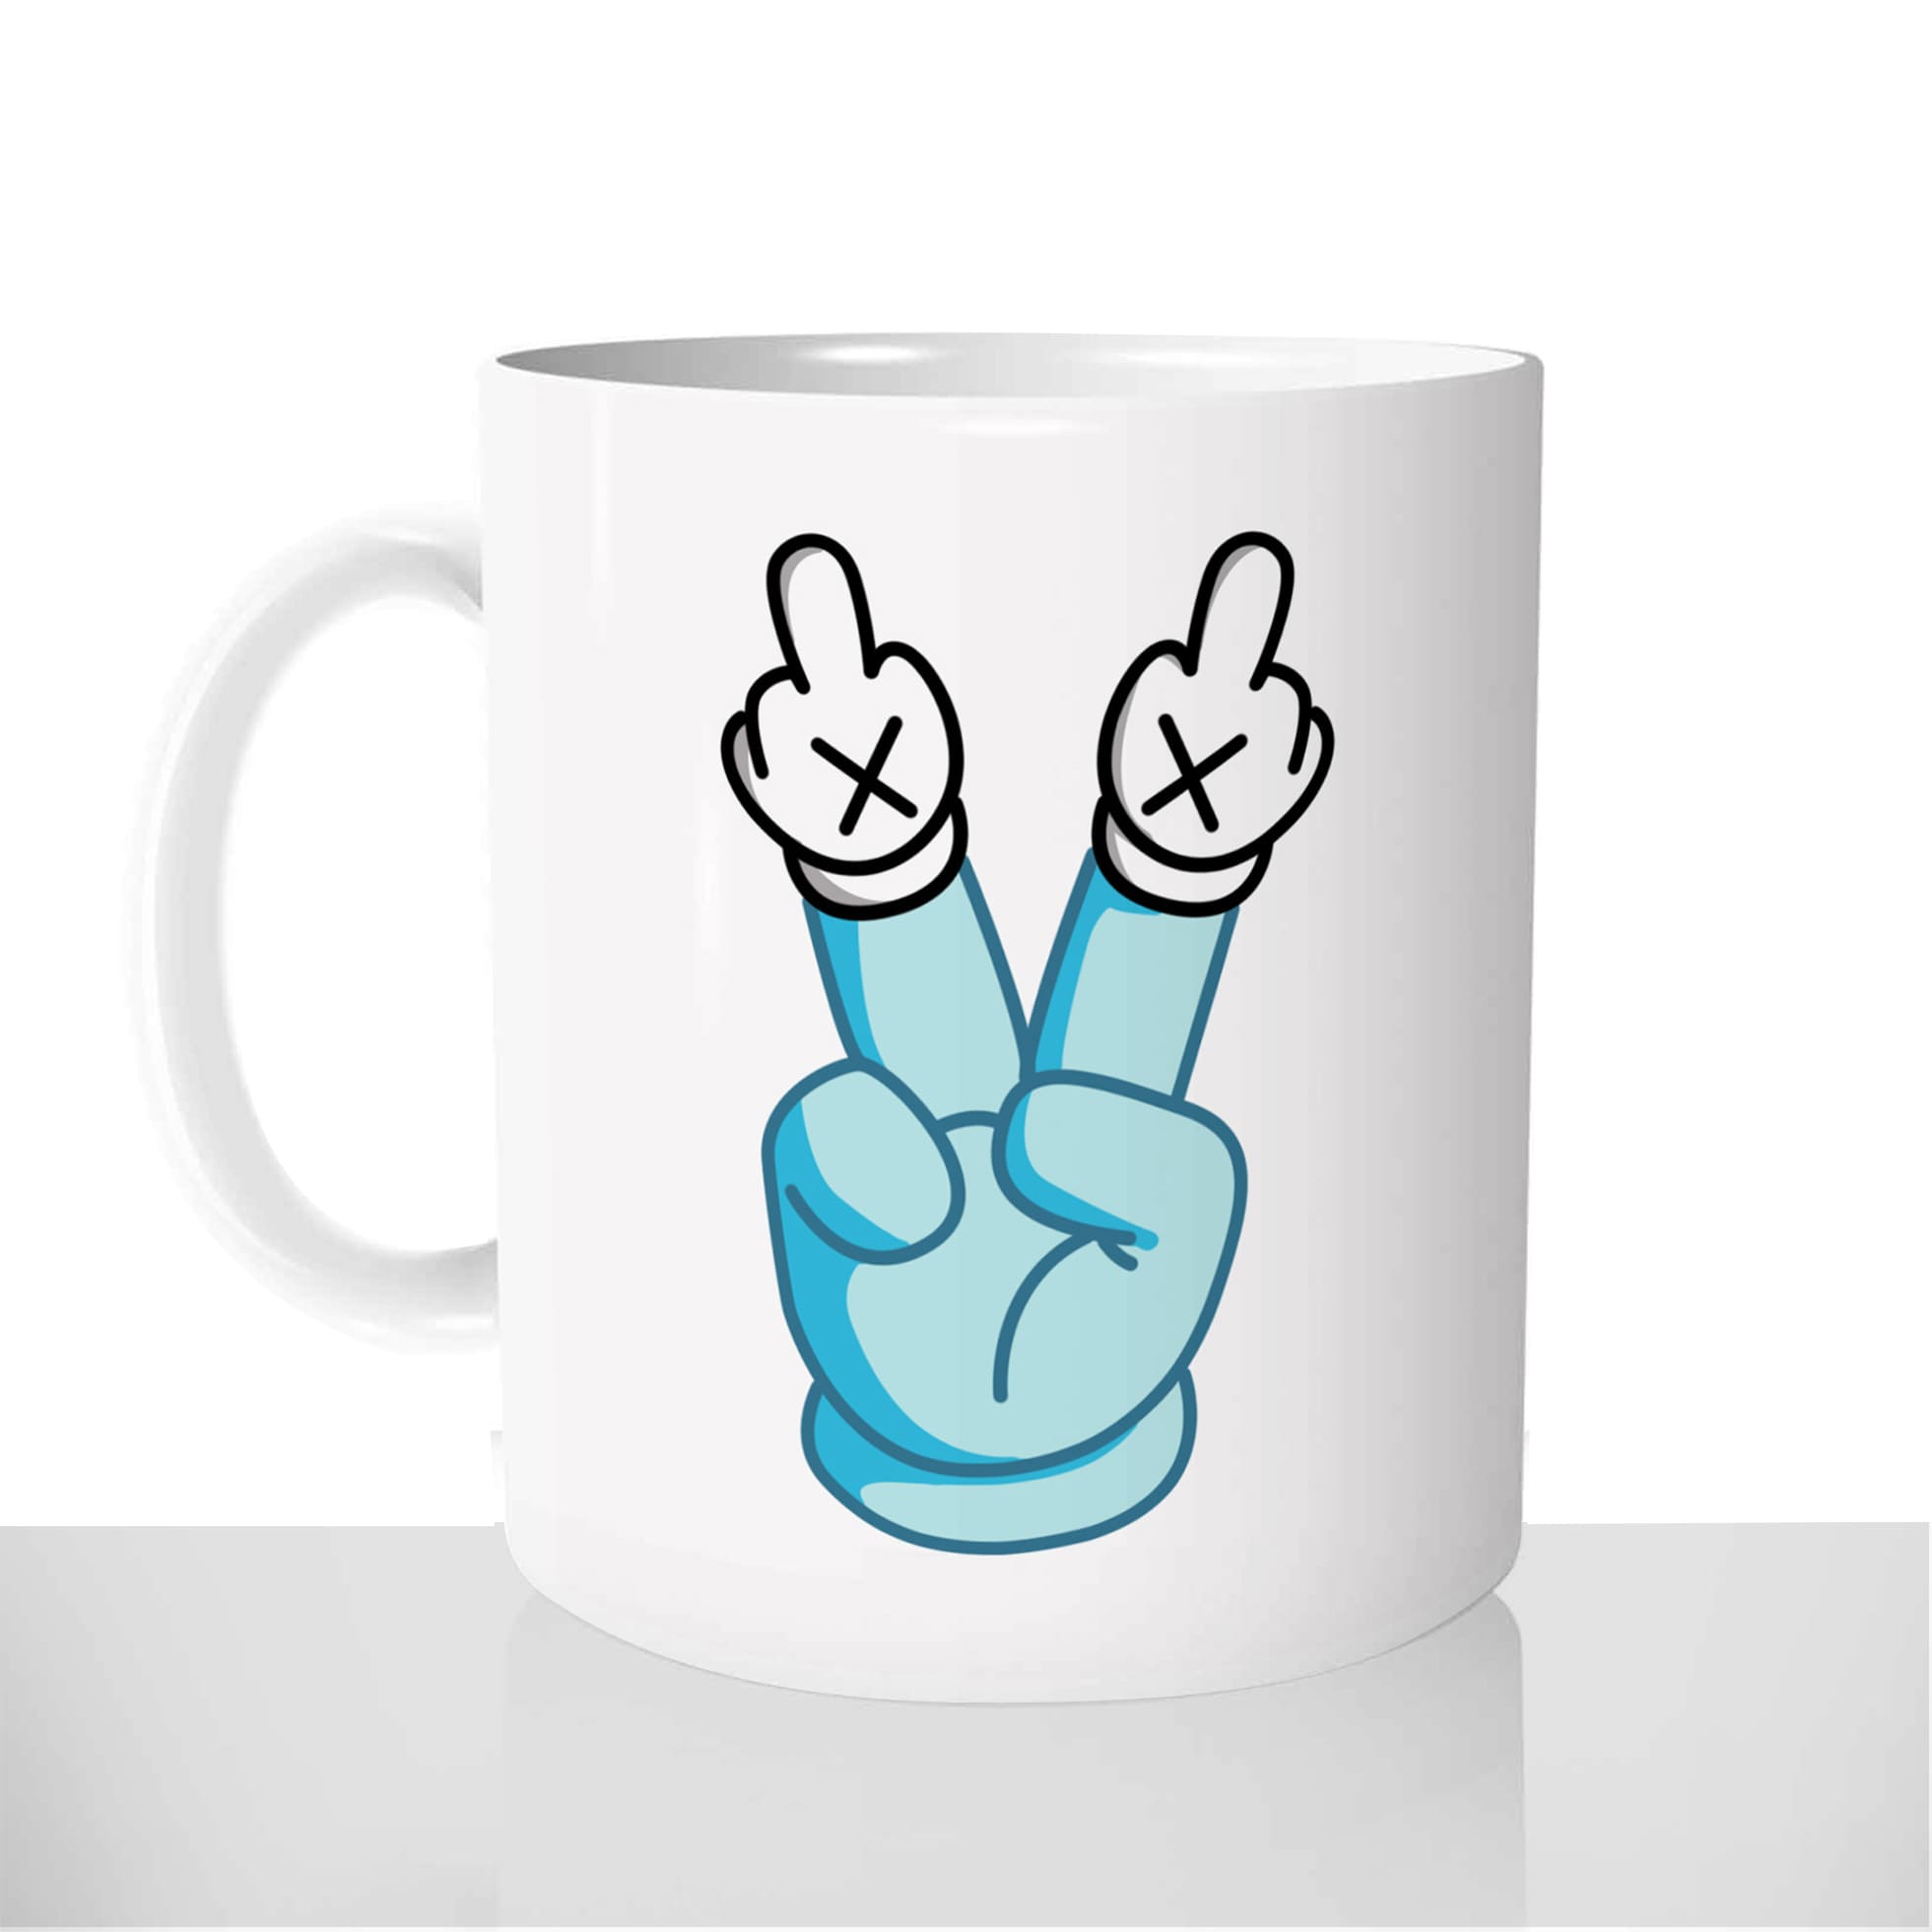 mug-tasse-blanc-brillant-personnalisé-double-fuck-peace-main-dessin-drole-idée-cadeau-original-personnalisable-francais